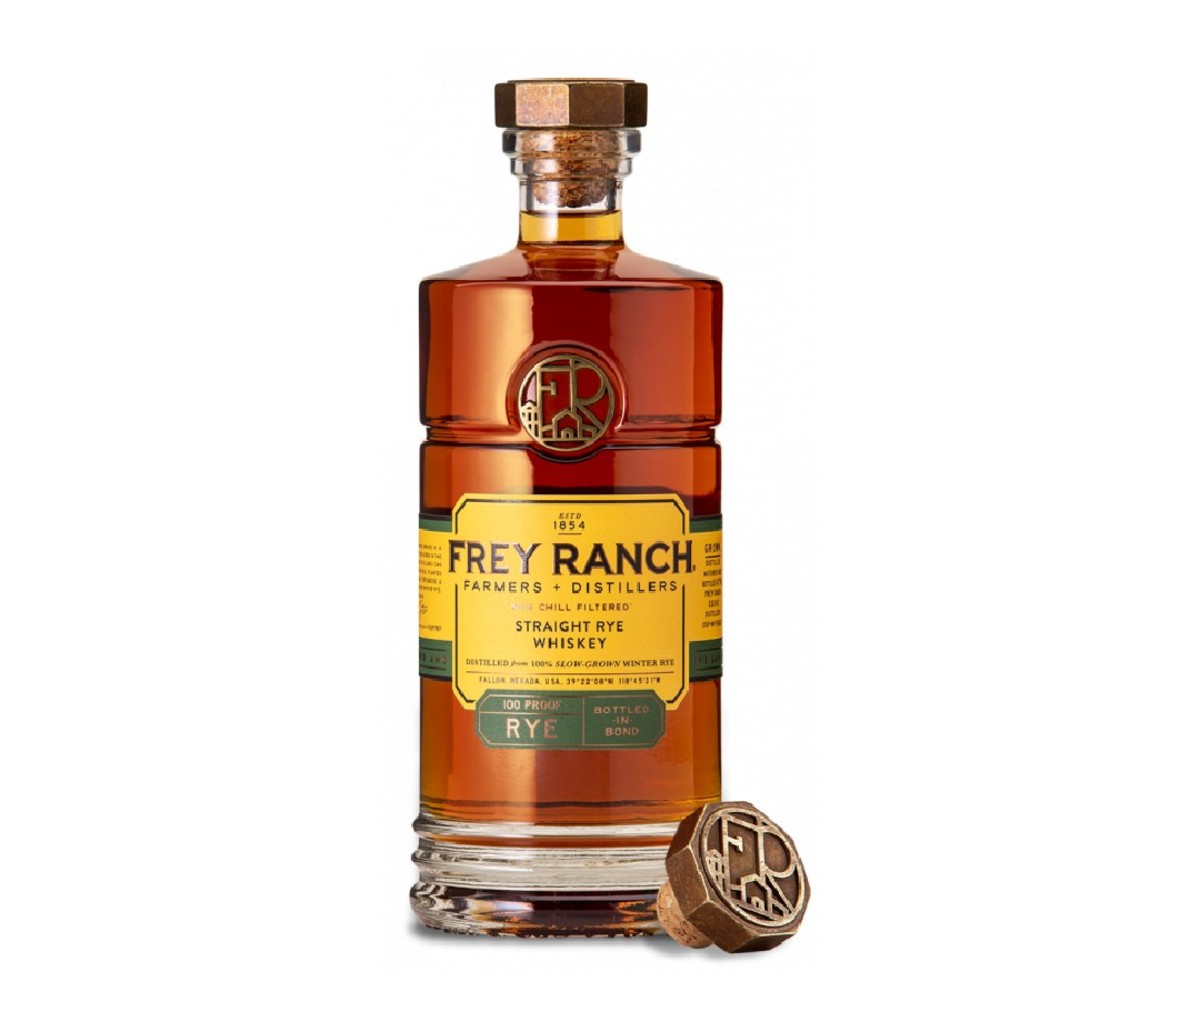 A bottle of Frey Ranch Rye whiskey